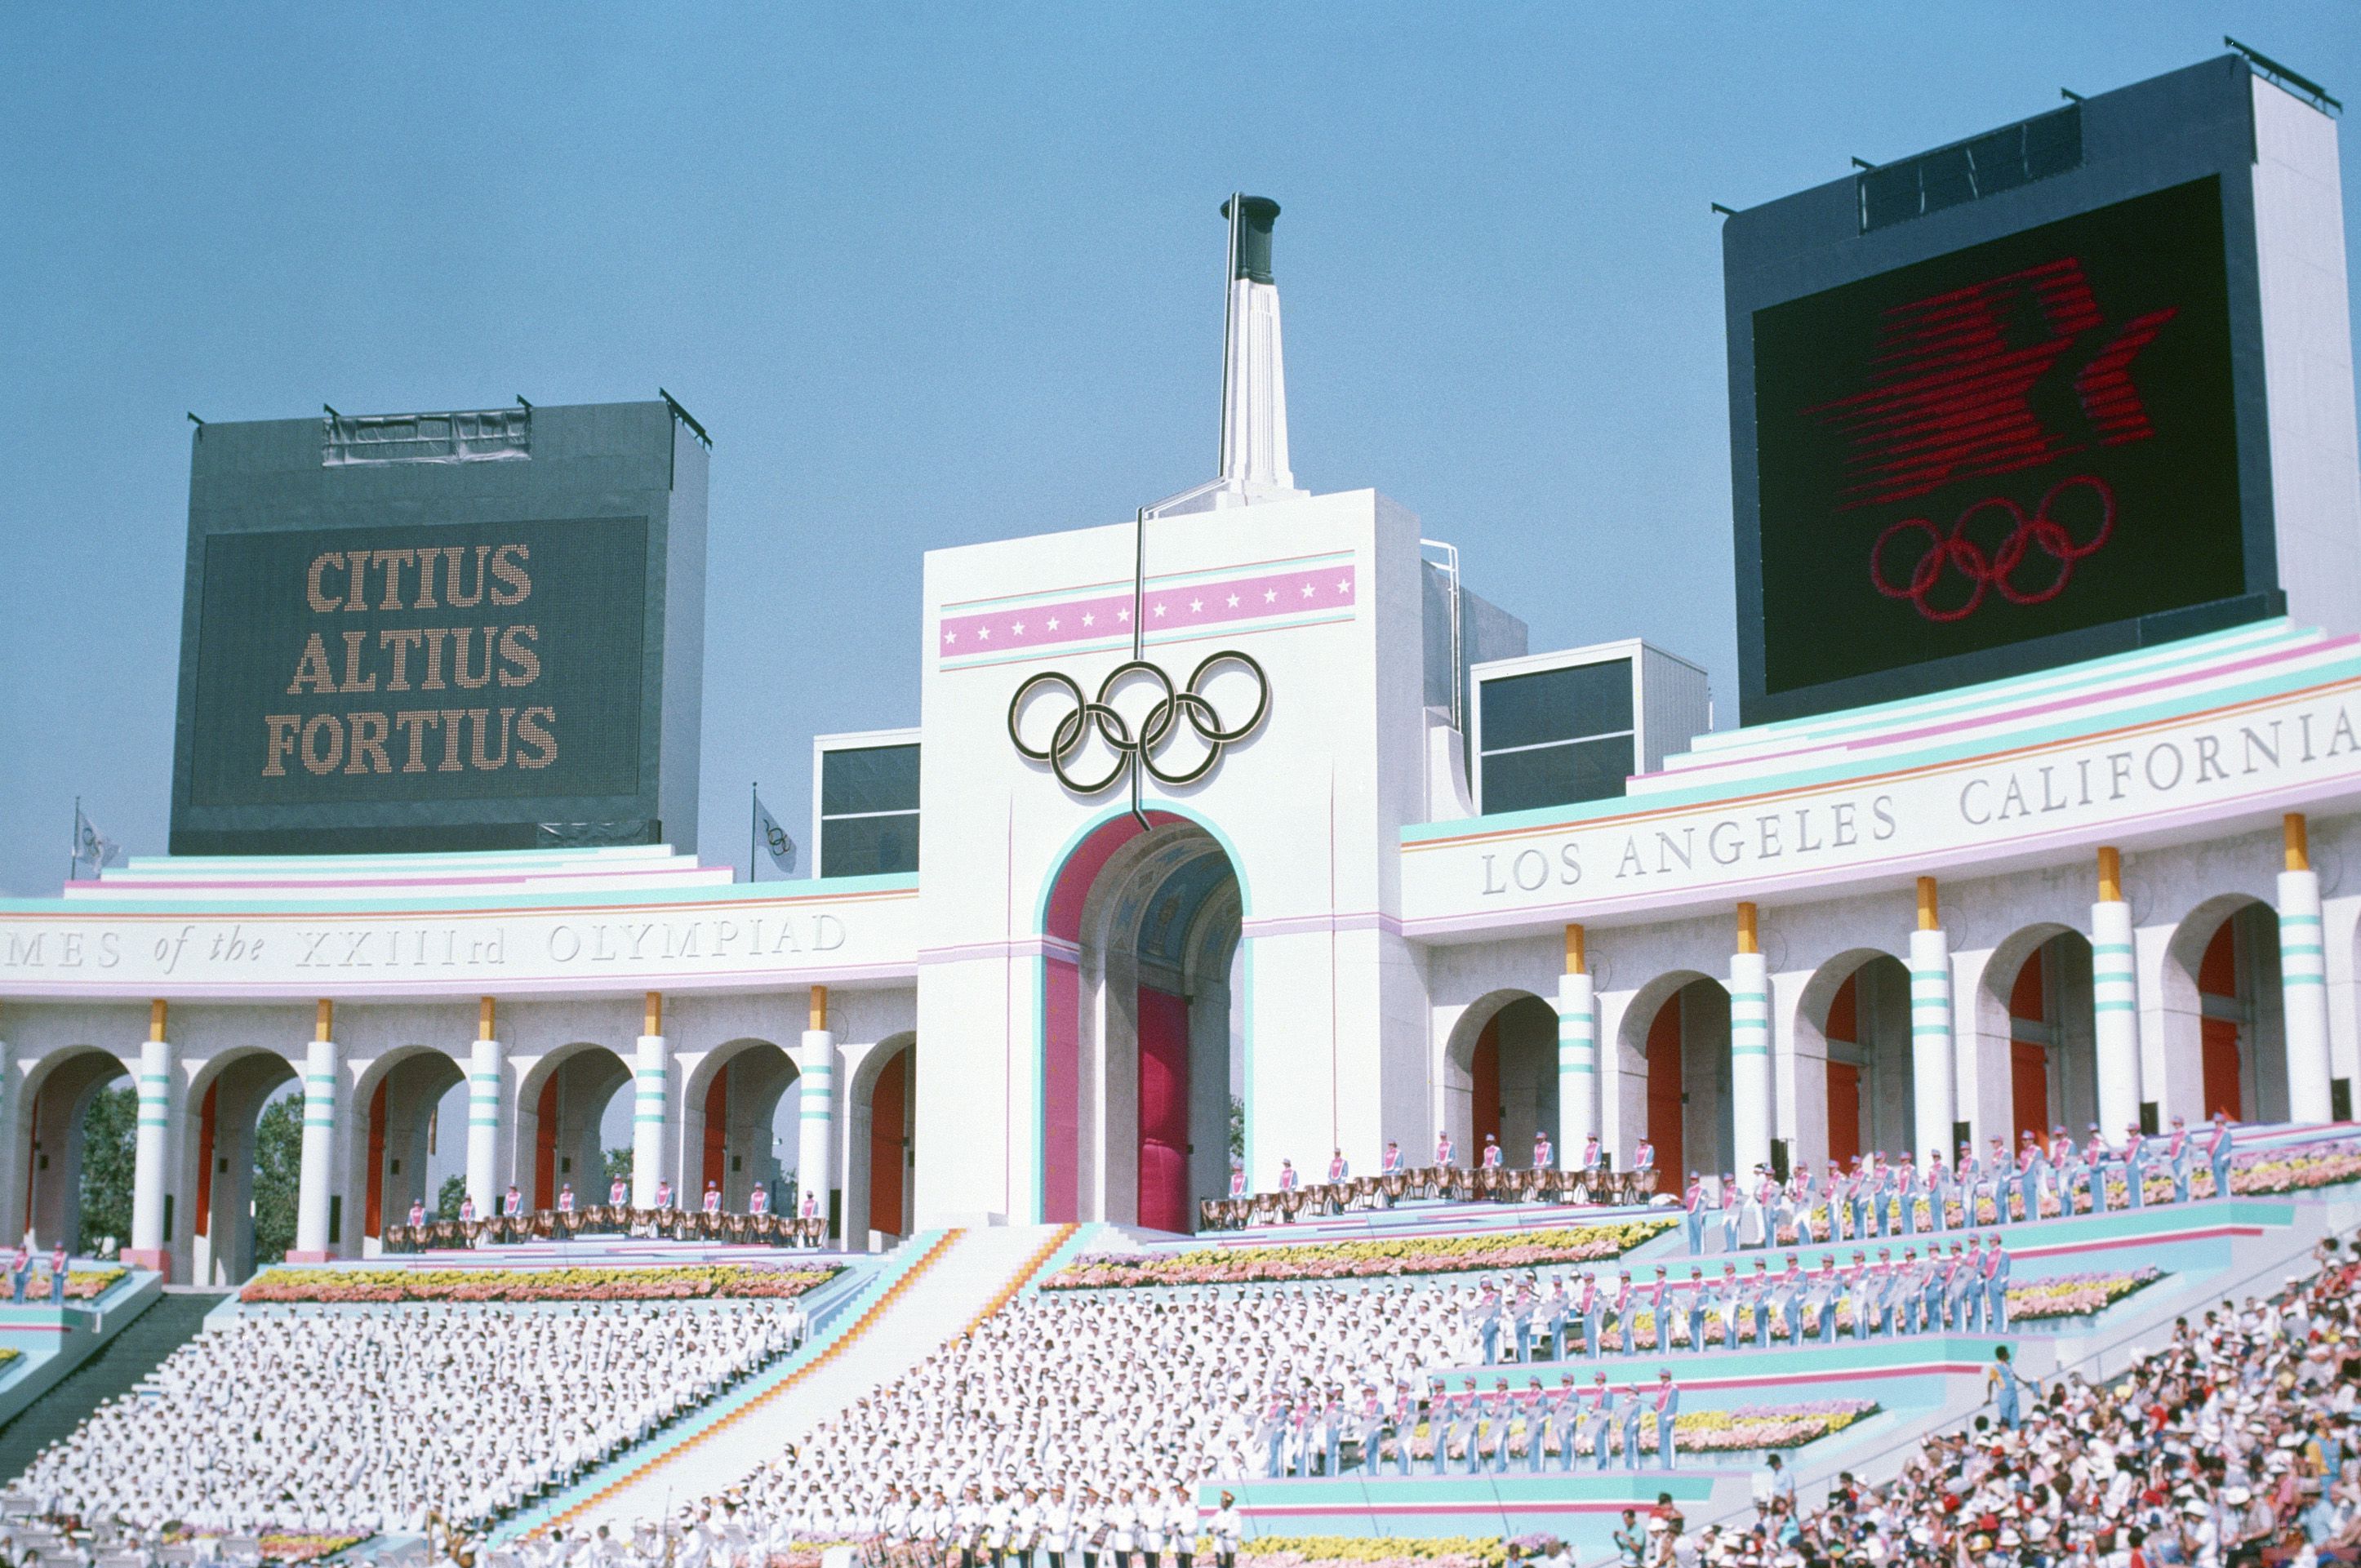 Los Angeles volt rendőrfőnöke szerint a város a lehető legrosszabb hely az olimpiára